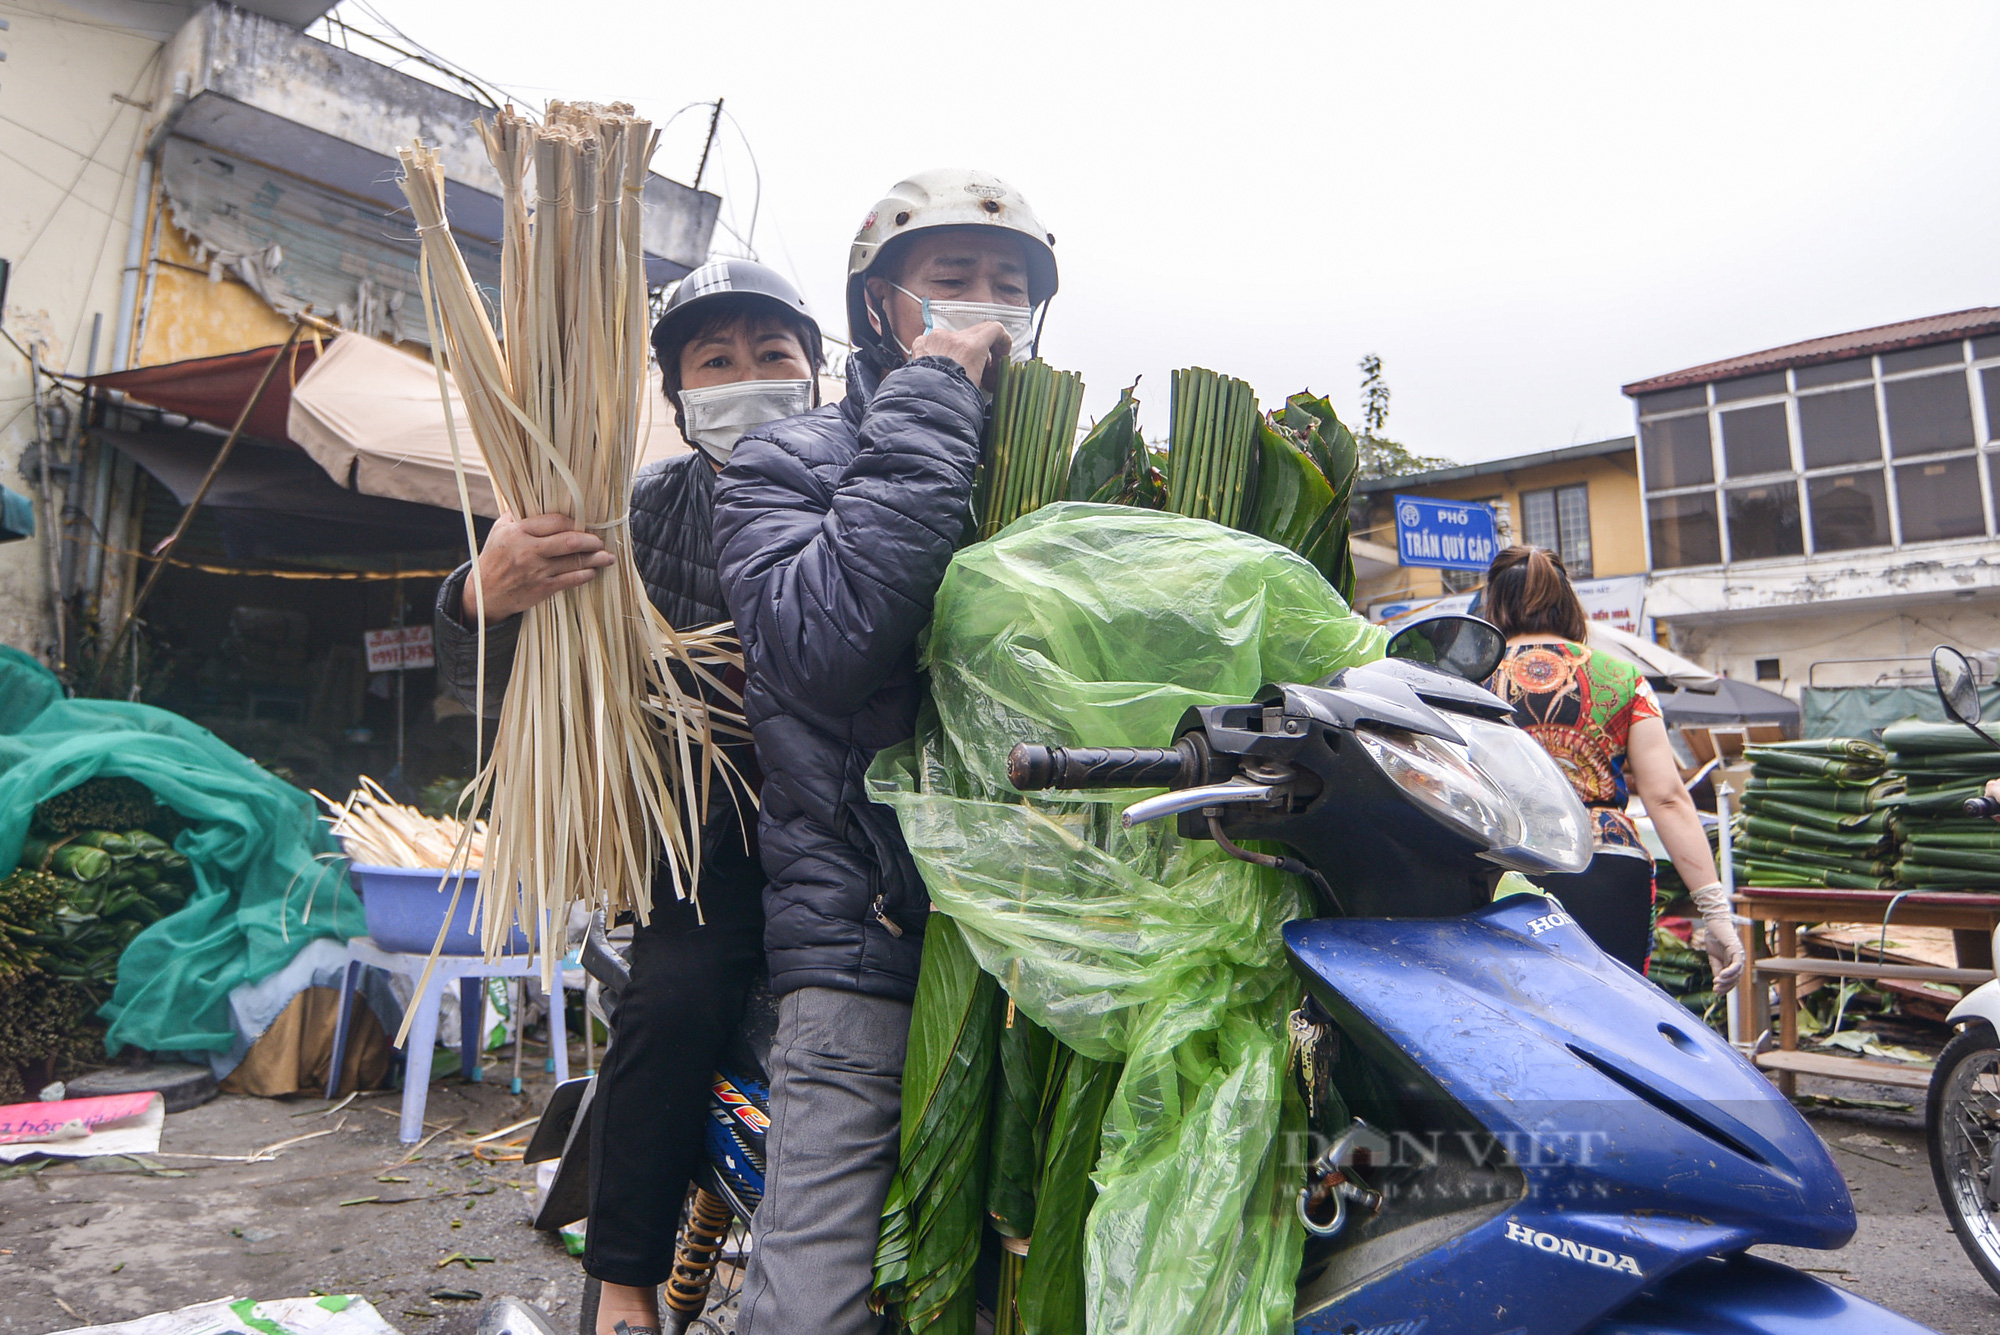  Chợ lá dong lâu đời ở Hà Nội dù vắng khách nhưng giá vẫn cao - Ảnh 13.